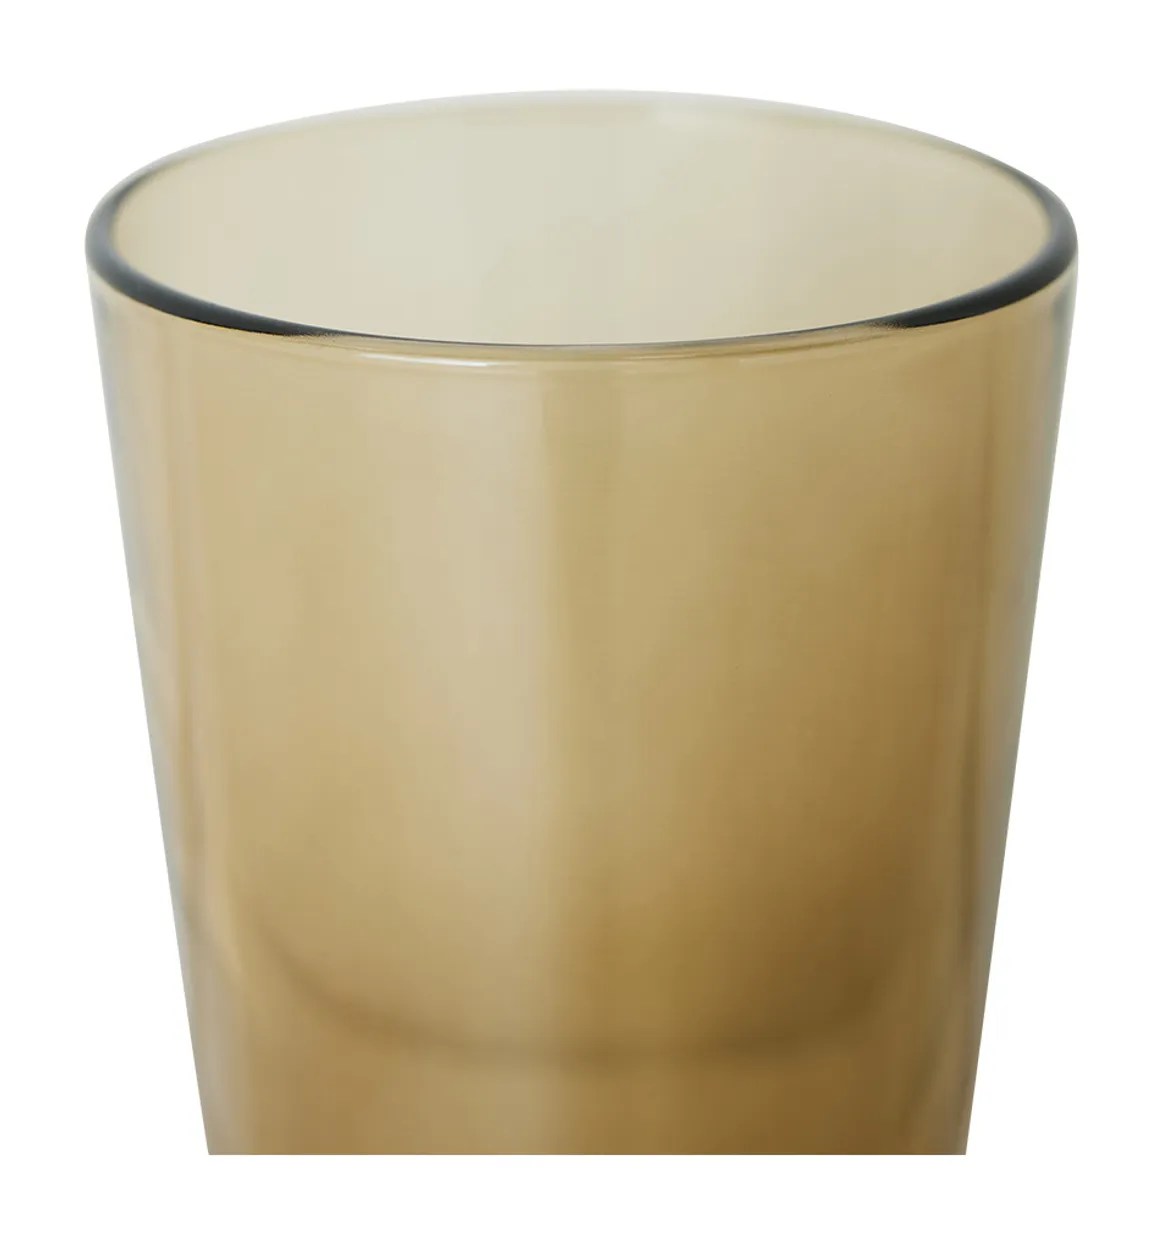 70s glassware: tea glasses mud brown (set of 4)